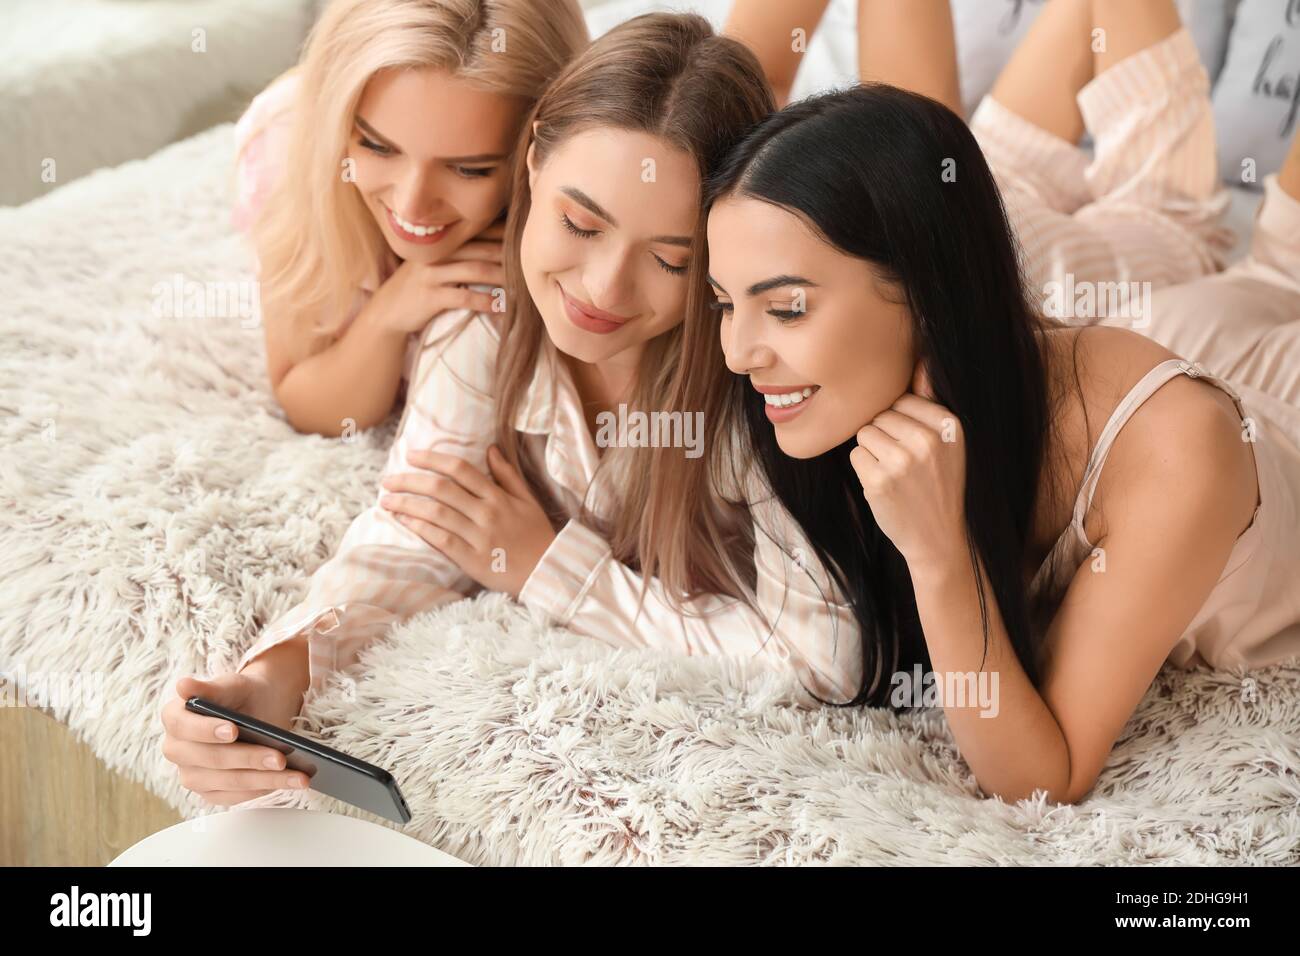 Hermosas mujeres jóvenes tomando selfie en la fiesta de pijamas Foto de stock